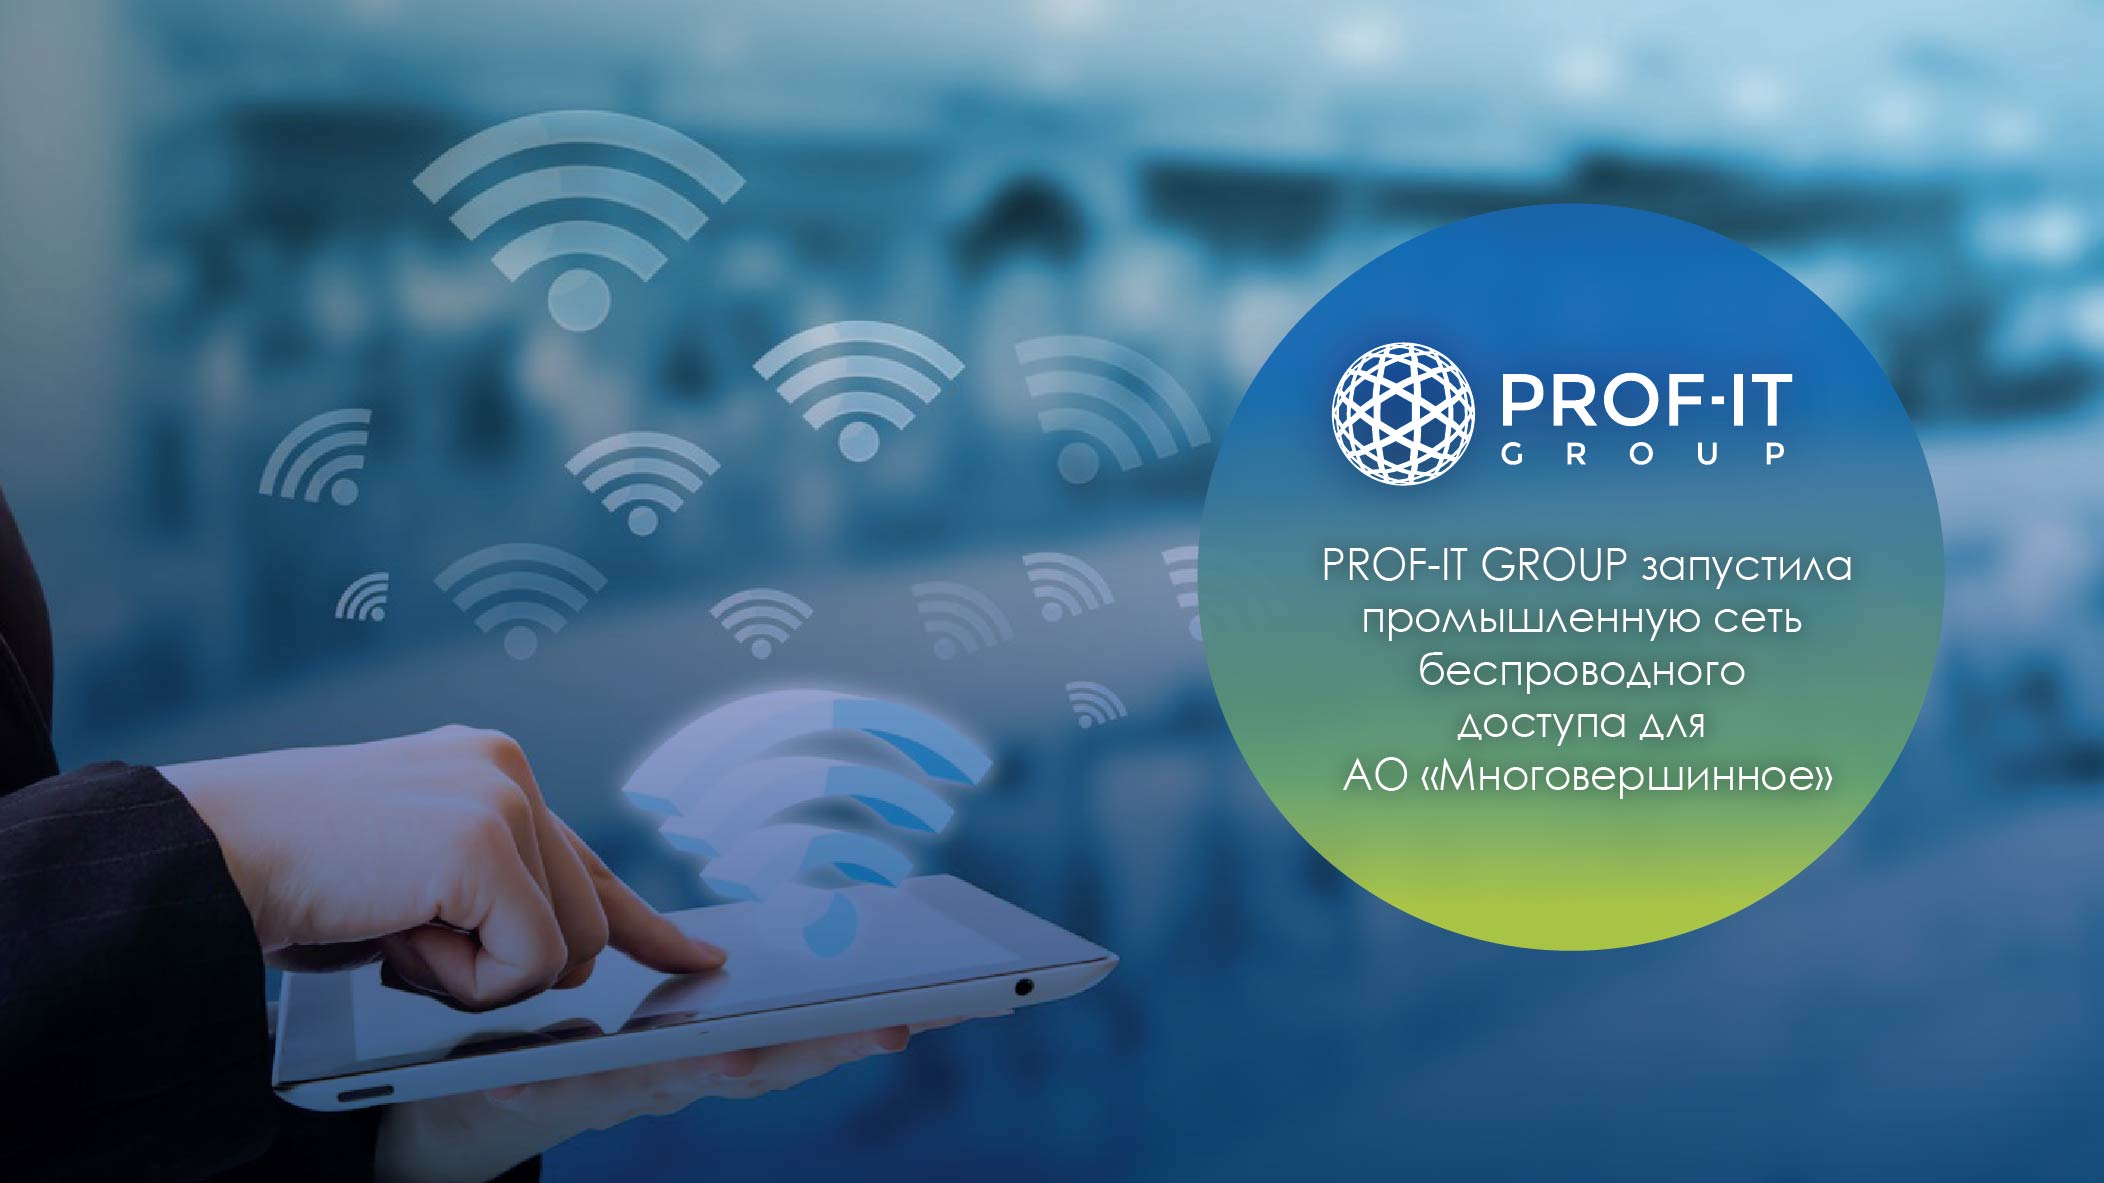  PROF-IT GROUP запустила промышленную сеть беспроводного доступа для  АО «Многовершинное»